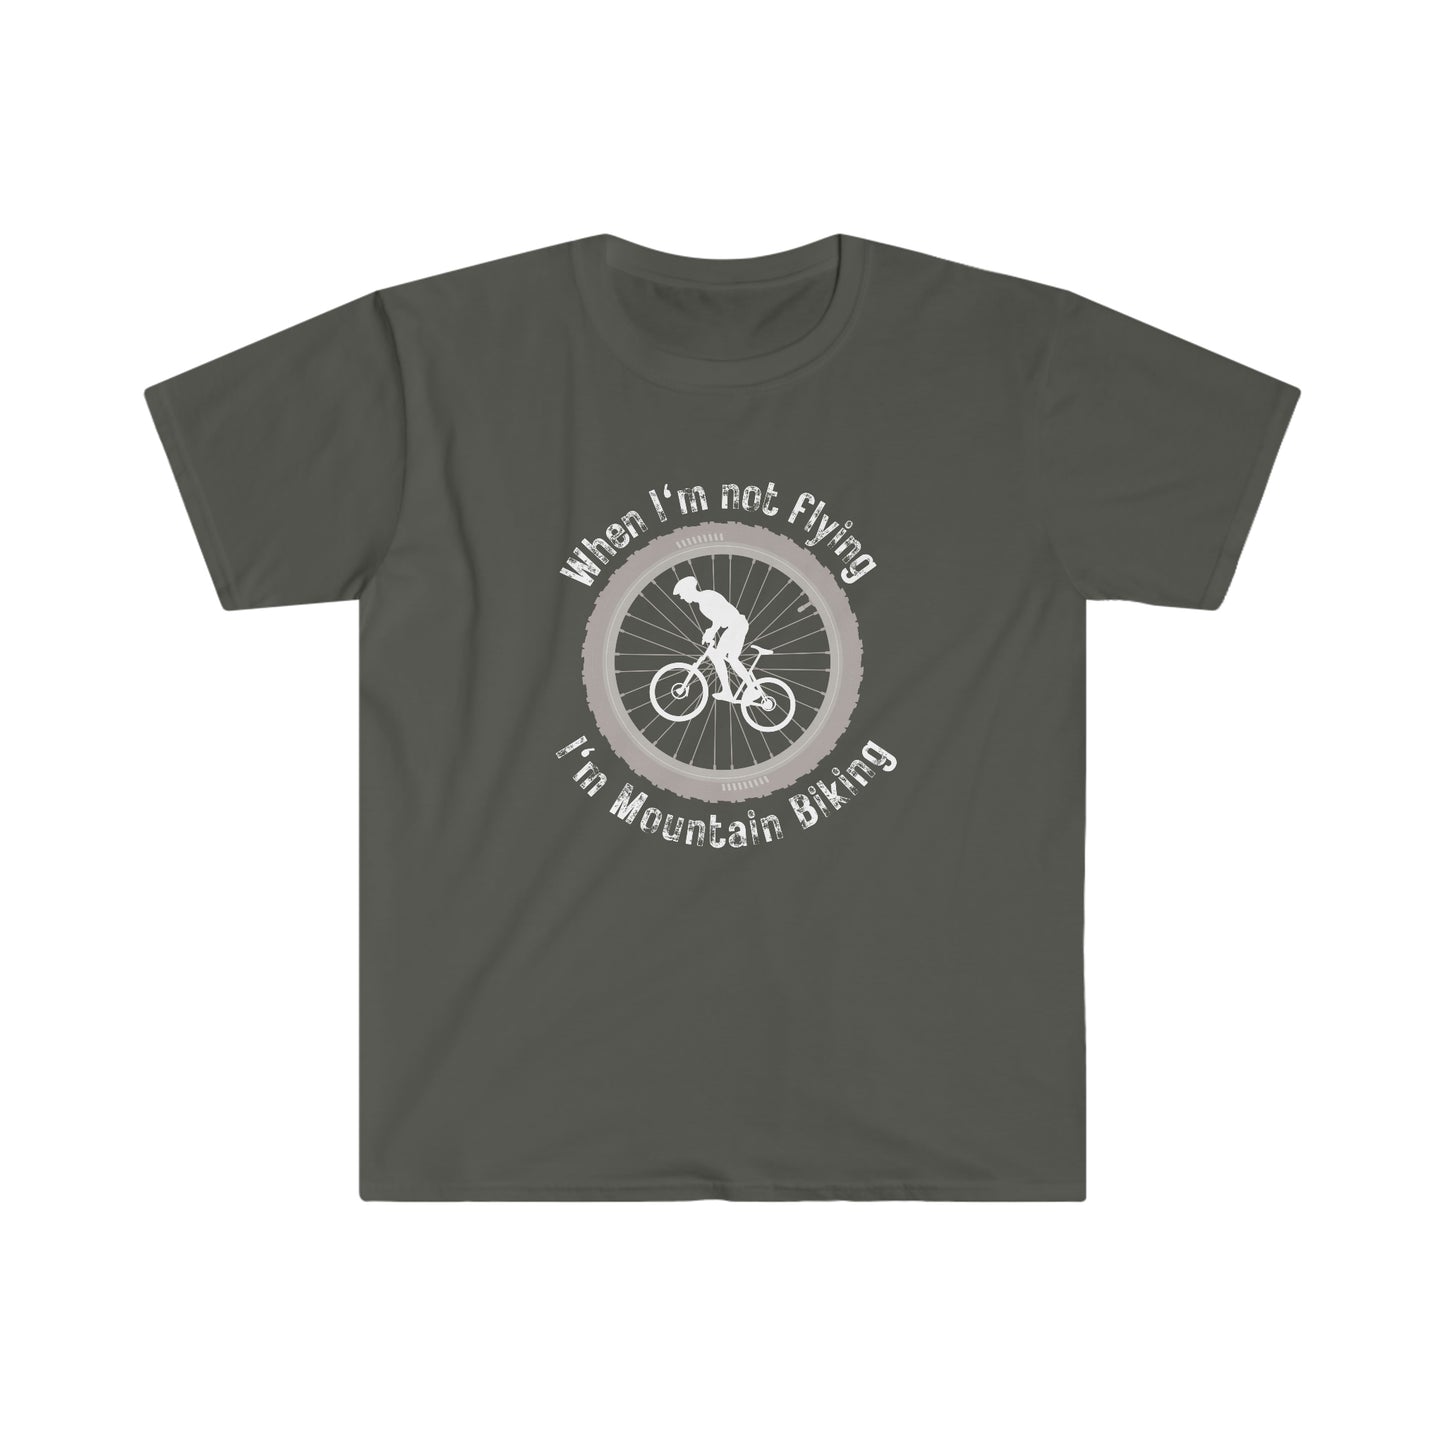 When I'm Not Flying, I'm Mountain Biking T-Shirt